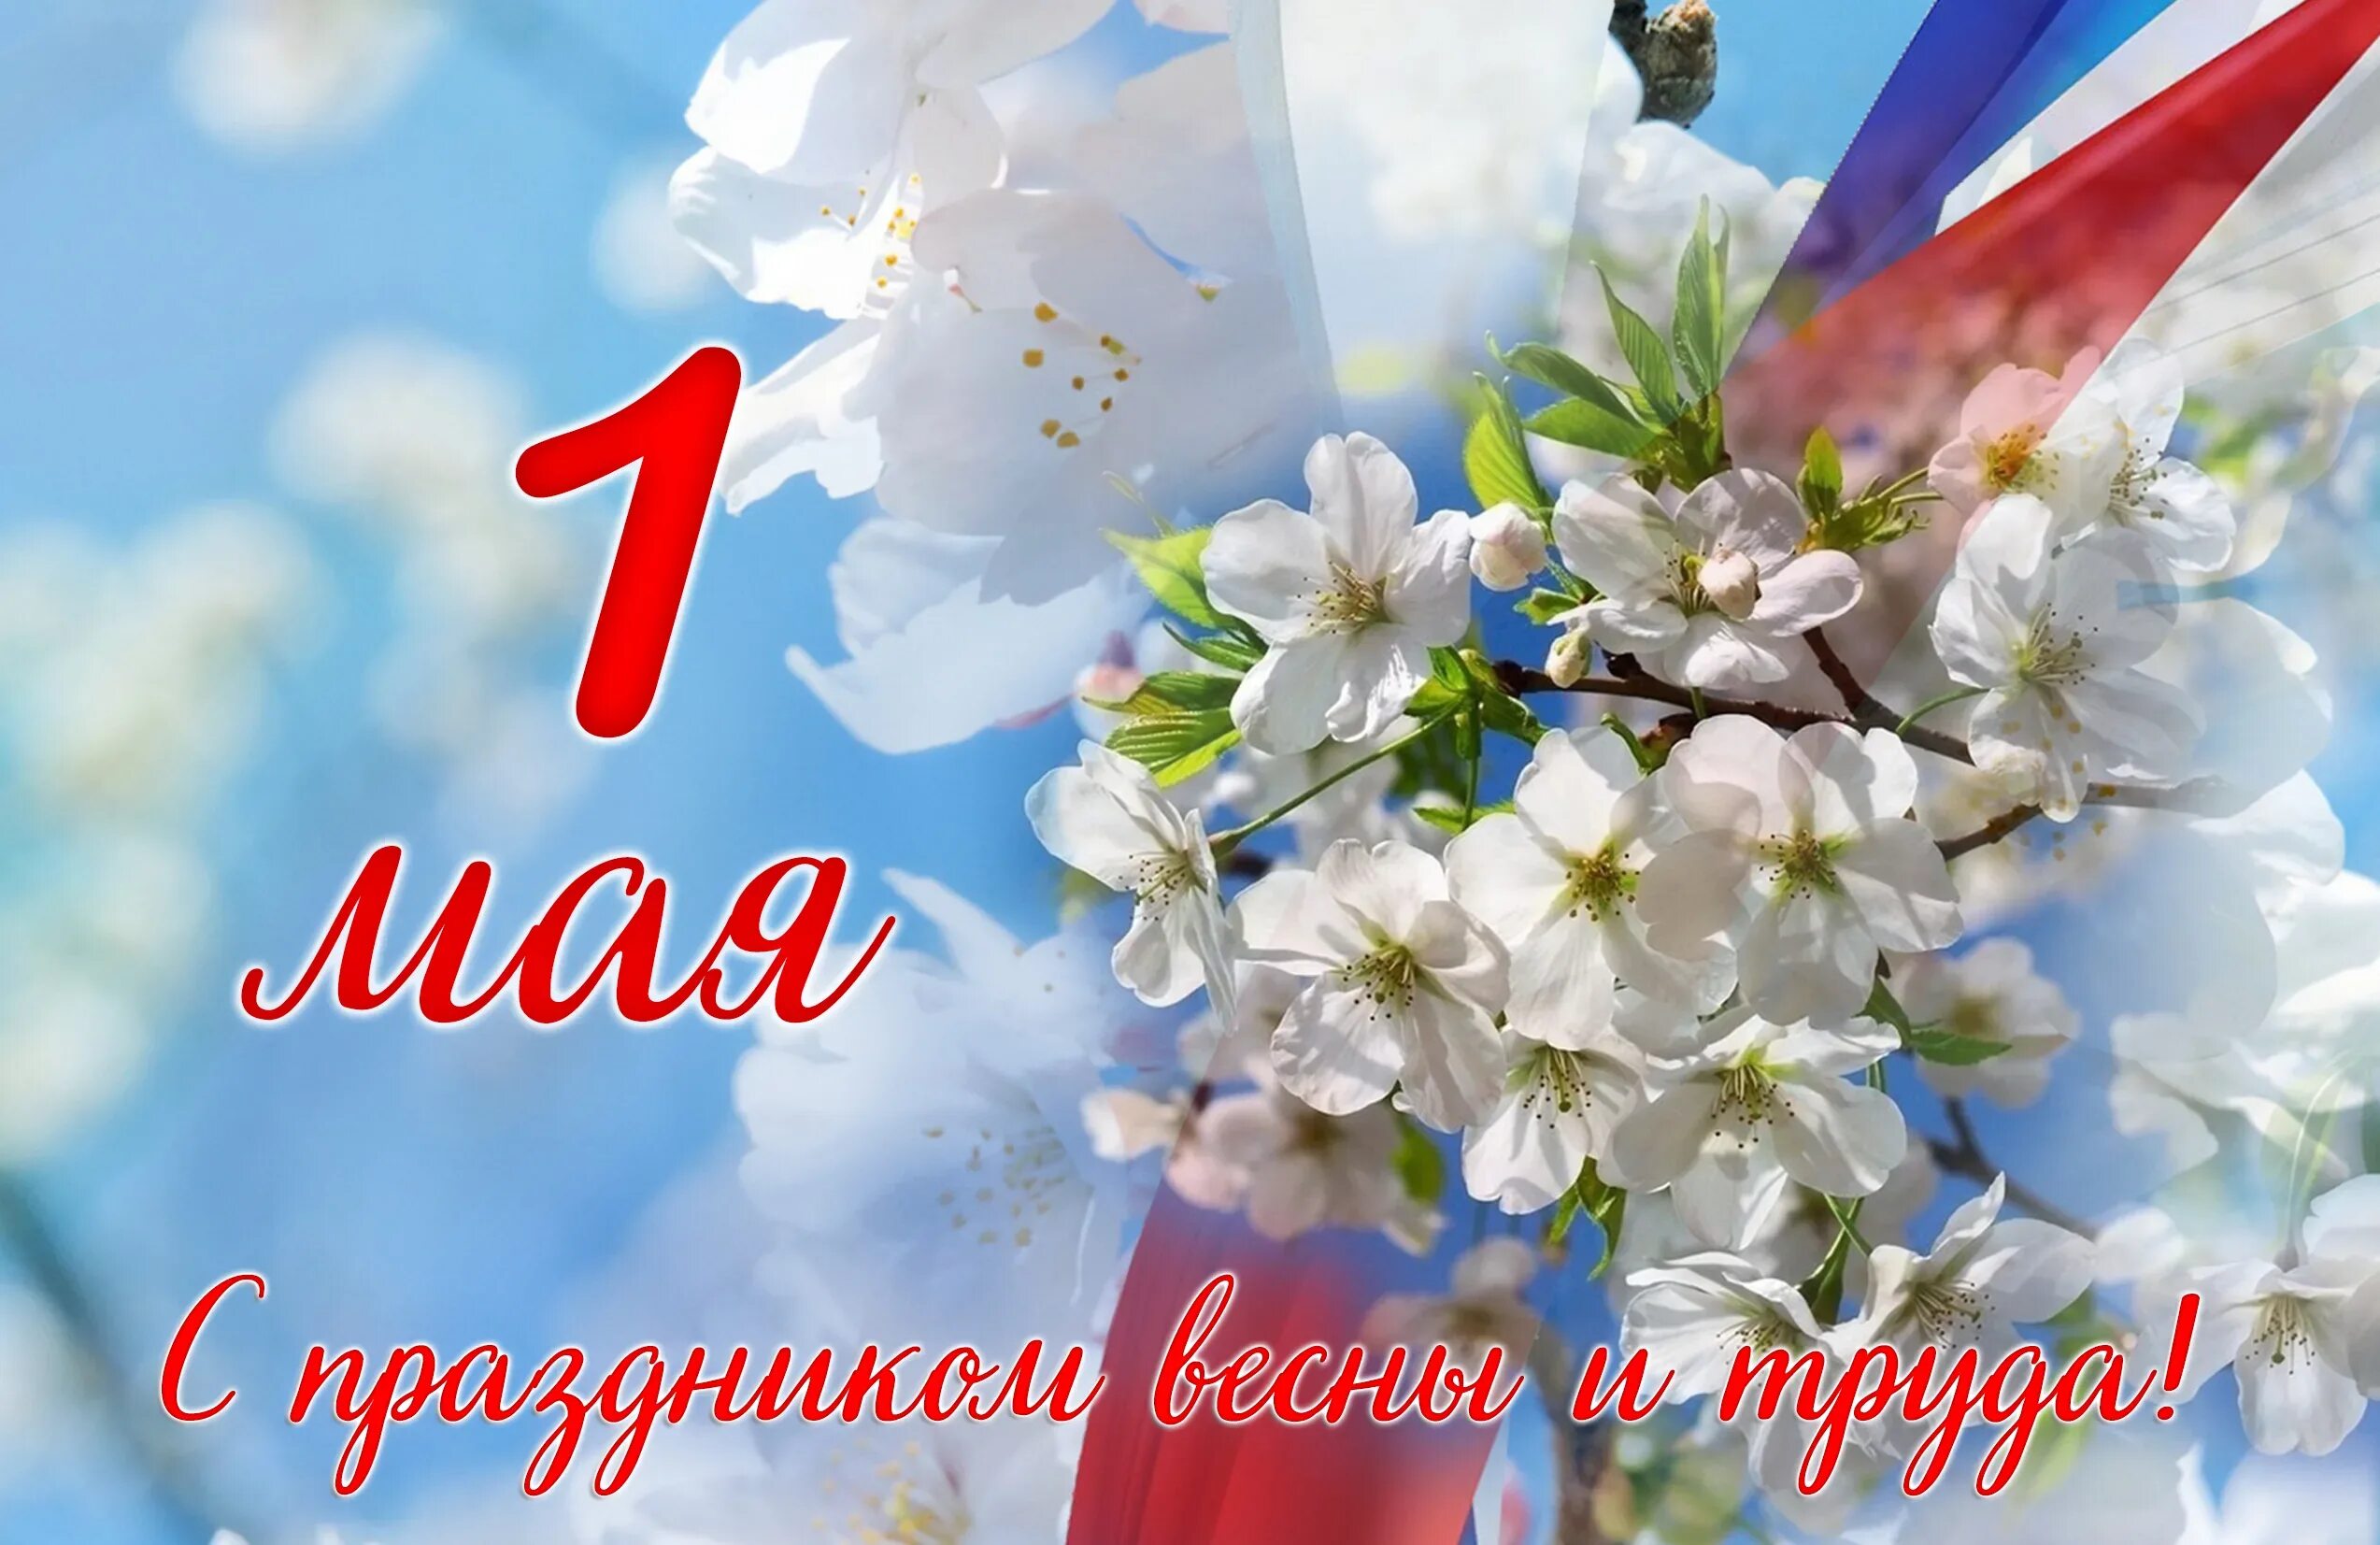 Что делают 1 мая. 1 Мая. 1 Мая праздник весны и труда. Поздравление с 1 мая. 1 Мая праздник.